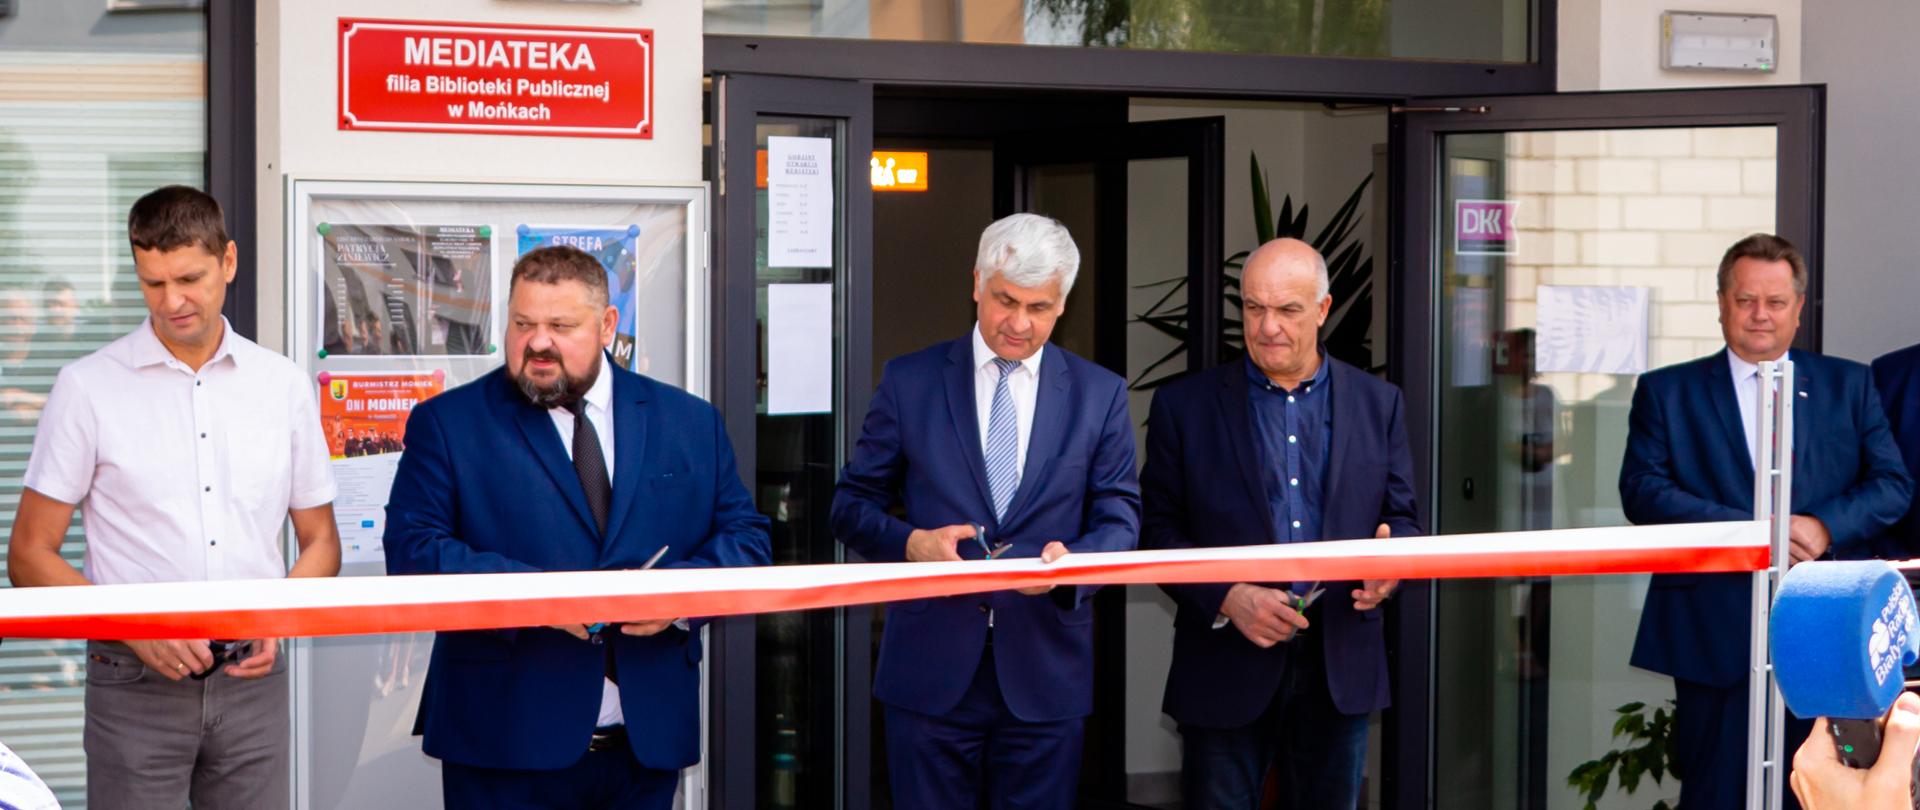 Mediateka w Mońkach oficjalnie otwarta